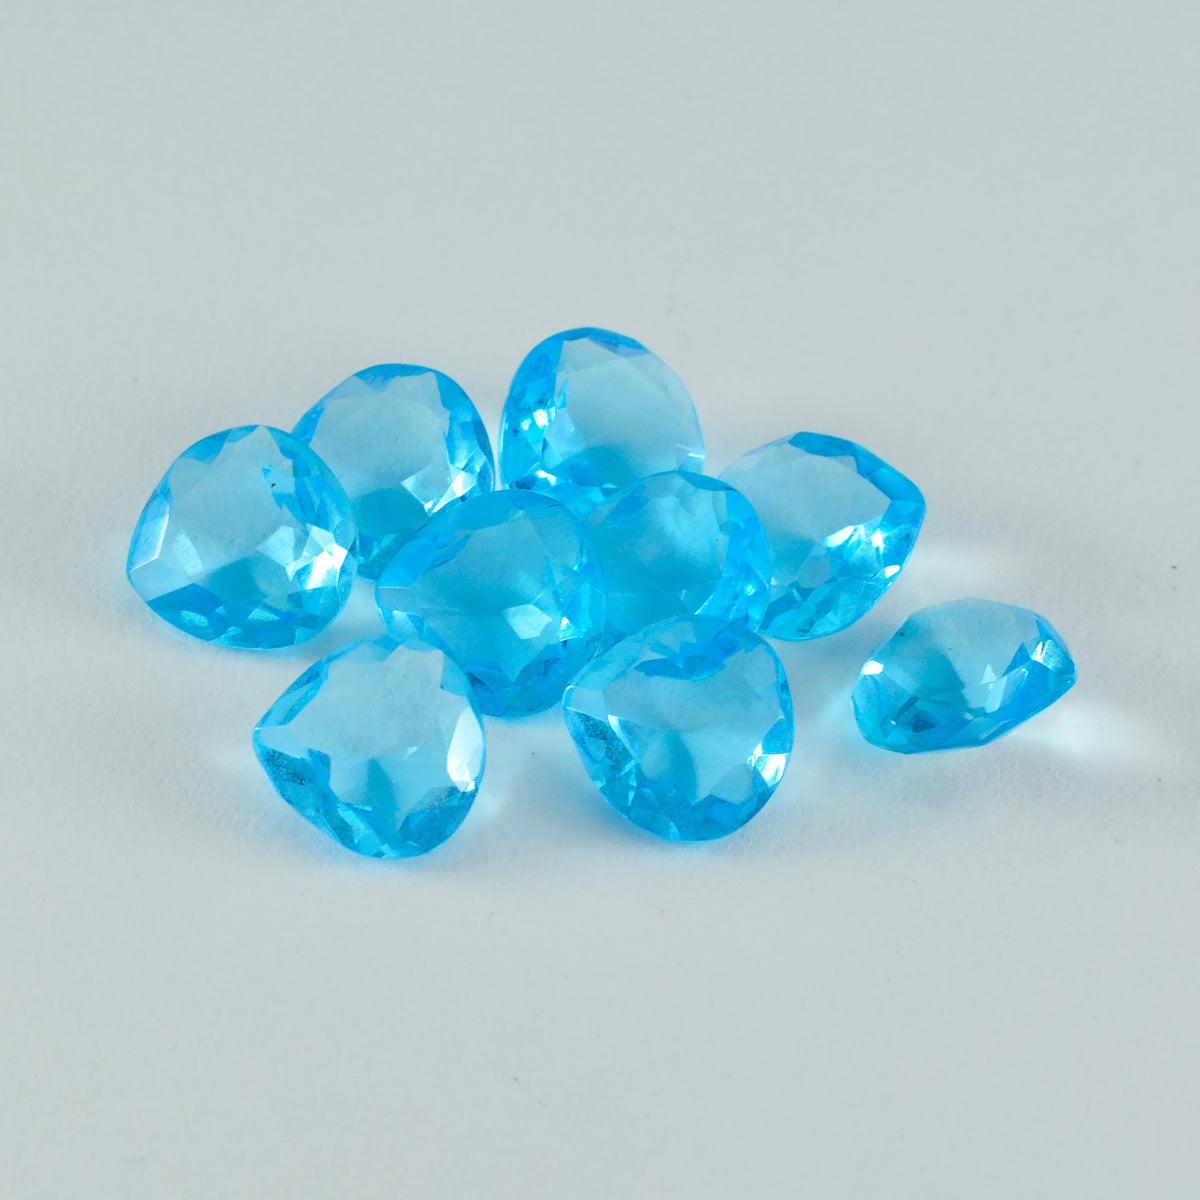 riyogems 1 шт. синий топаз cz ограненный 10x10 мм в форме сердца прекрасный качественный свободный драгоценный камень